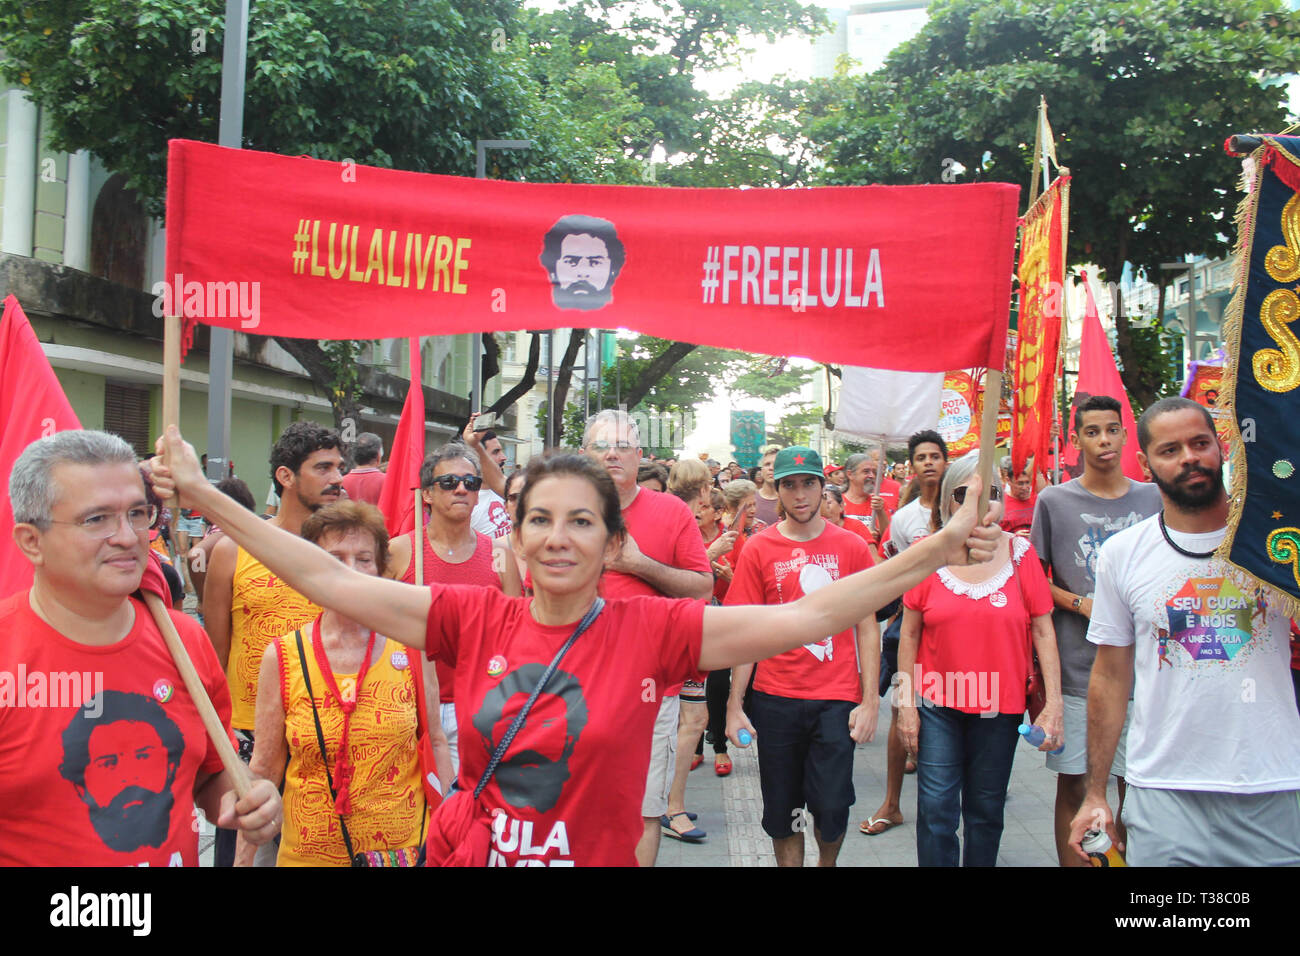 RECIFE, PE - 07.04.2019 : JORNADA LULA LIVRE NO RECIFE - Loi intitulée "Jda Lul Lula Livre de Recife, qui a eu lieu en faveur de la liberté de l'ancien Président Lula qui complète cette Apr, une année d'persecrsecution politique selon les militants qui appellent également à la poursuite de la lutte pour la démocratie, la justice. La loi prend place dans l'Arsenal de la place de la Marine, dans le quartier de Recife, également connu comme le "Vieux Recife" au début de la loi était à 15h00 entre le carnaval de fréquentations ; attrans ; blocs de ciranda, Ma, Maracatu Rural, parmi de nombreuses autres attractions. (Ph Banque D'Images